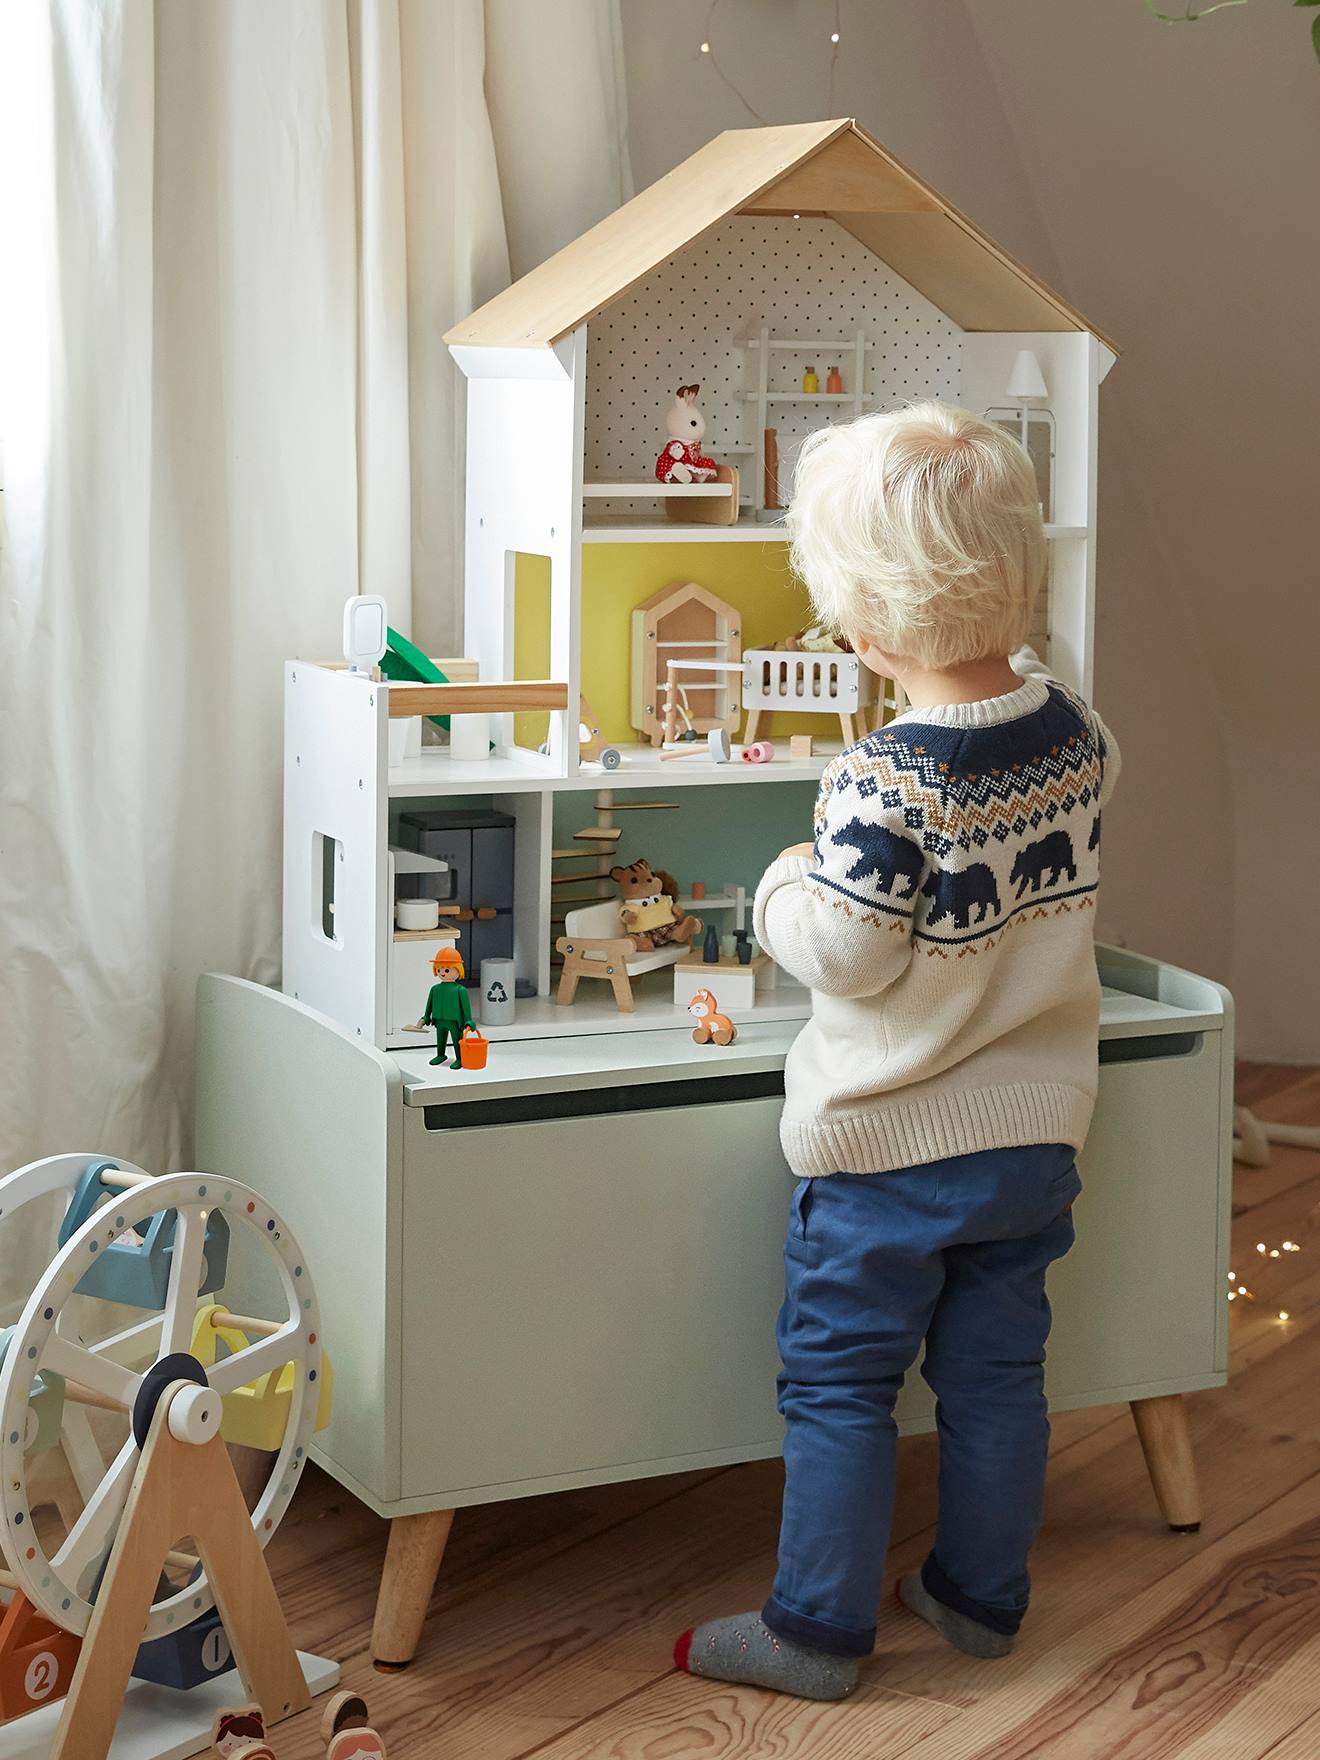 Personnages, accessoires et miniatures pour maison de poupées, la-maison -de-caroline.fr